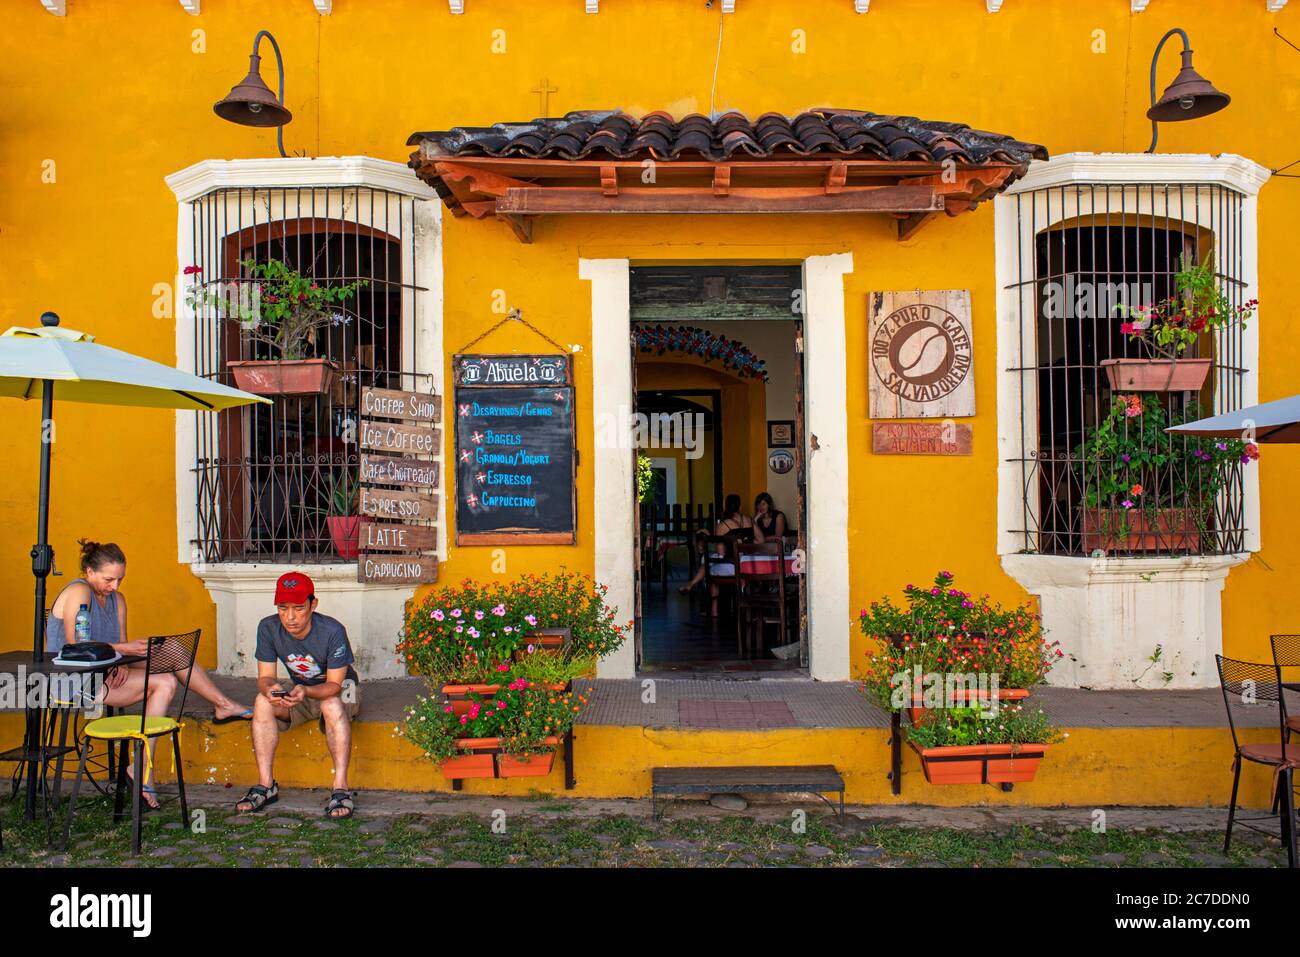 Casa de la abuela restaurant and Colorful architecture of Suchitoto. Suchitoto, Cuscatlan, El Salvador Central America Stock Photo